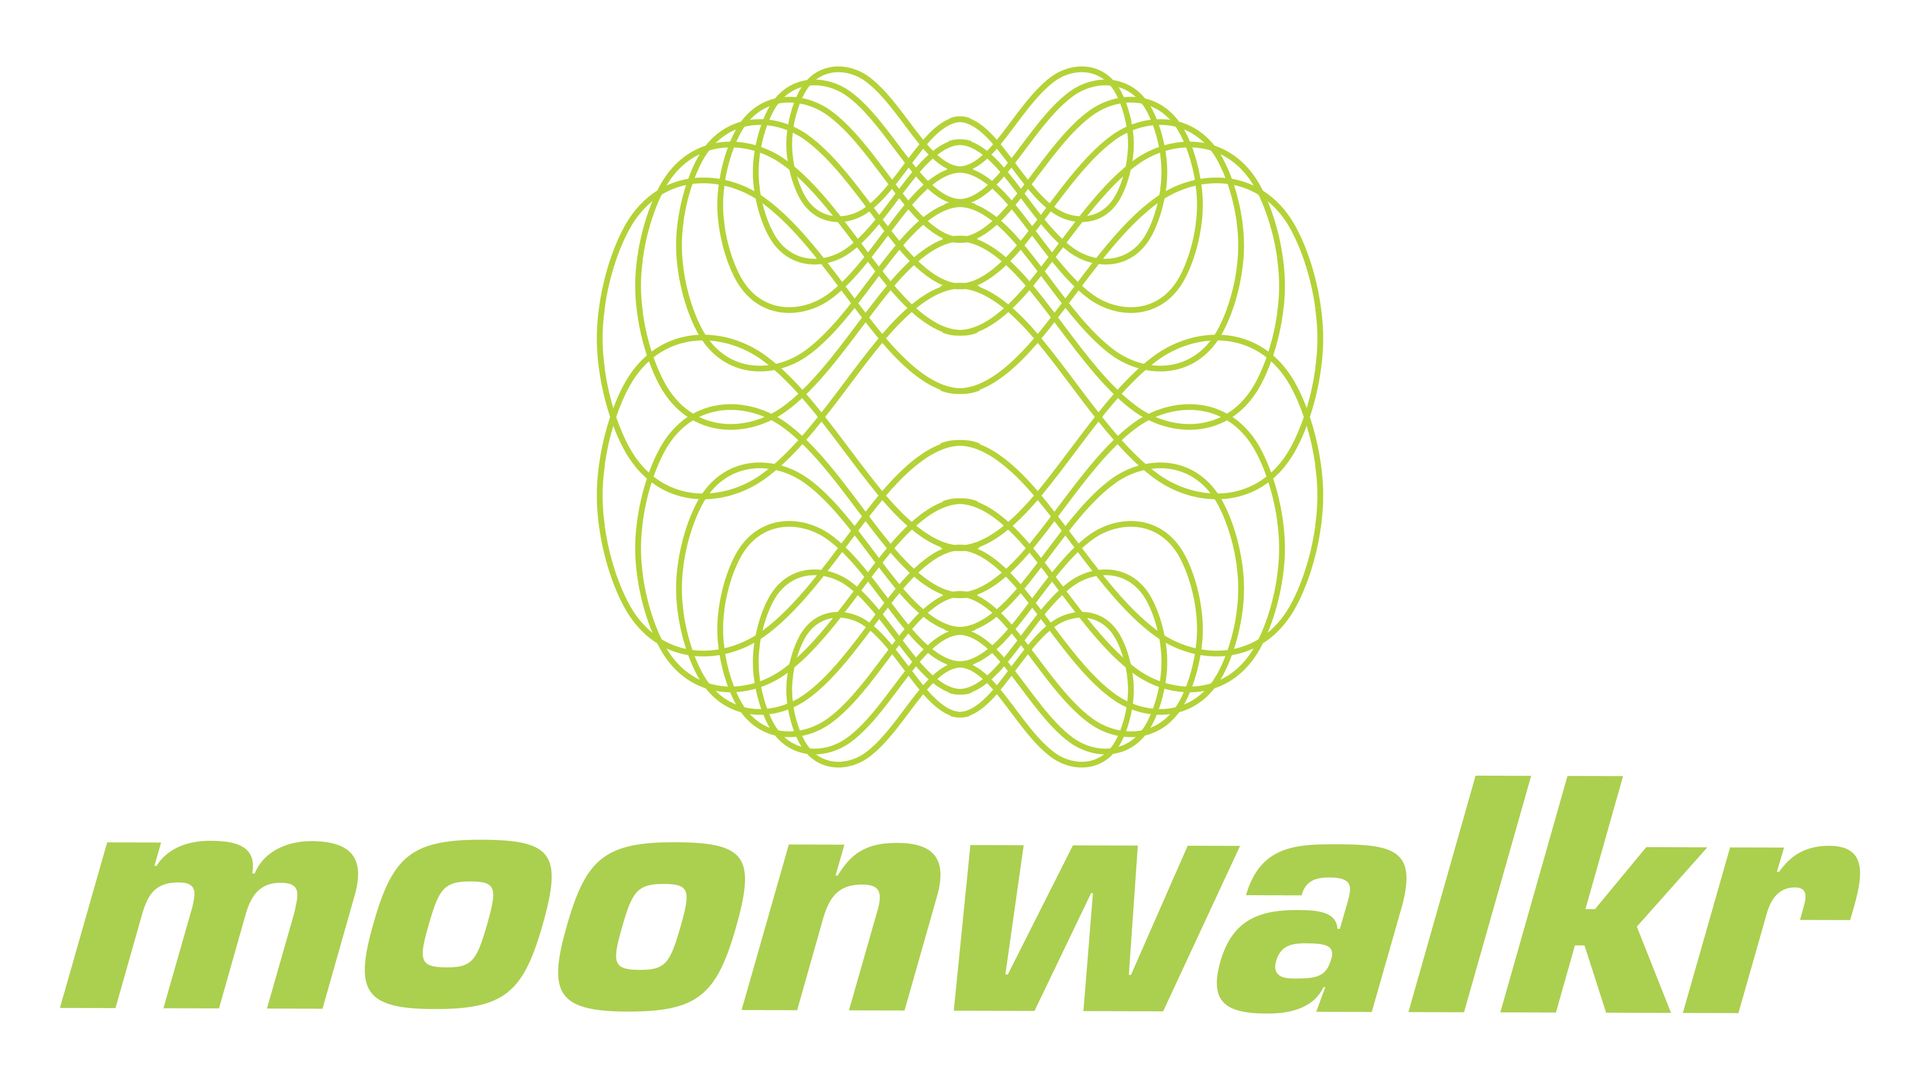 Brand: Moonwalkr